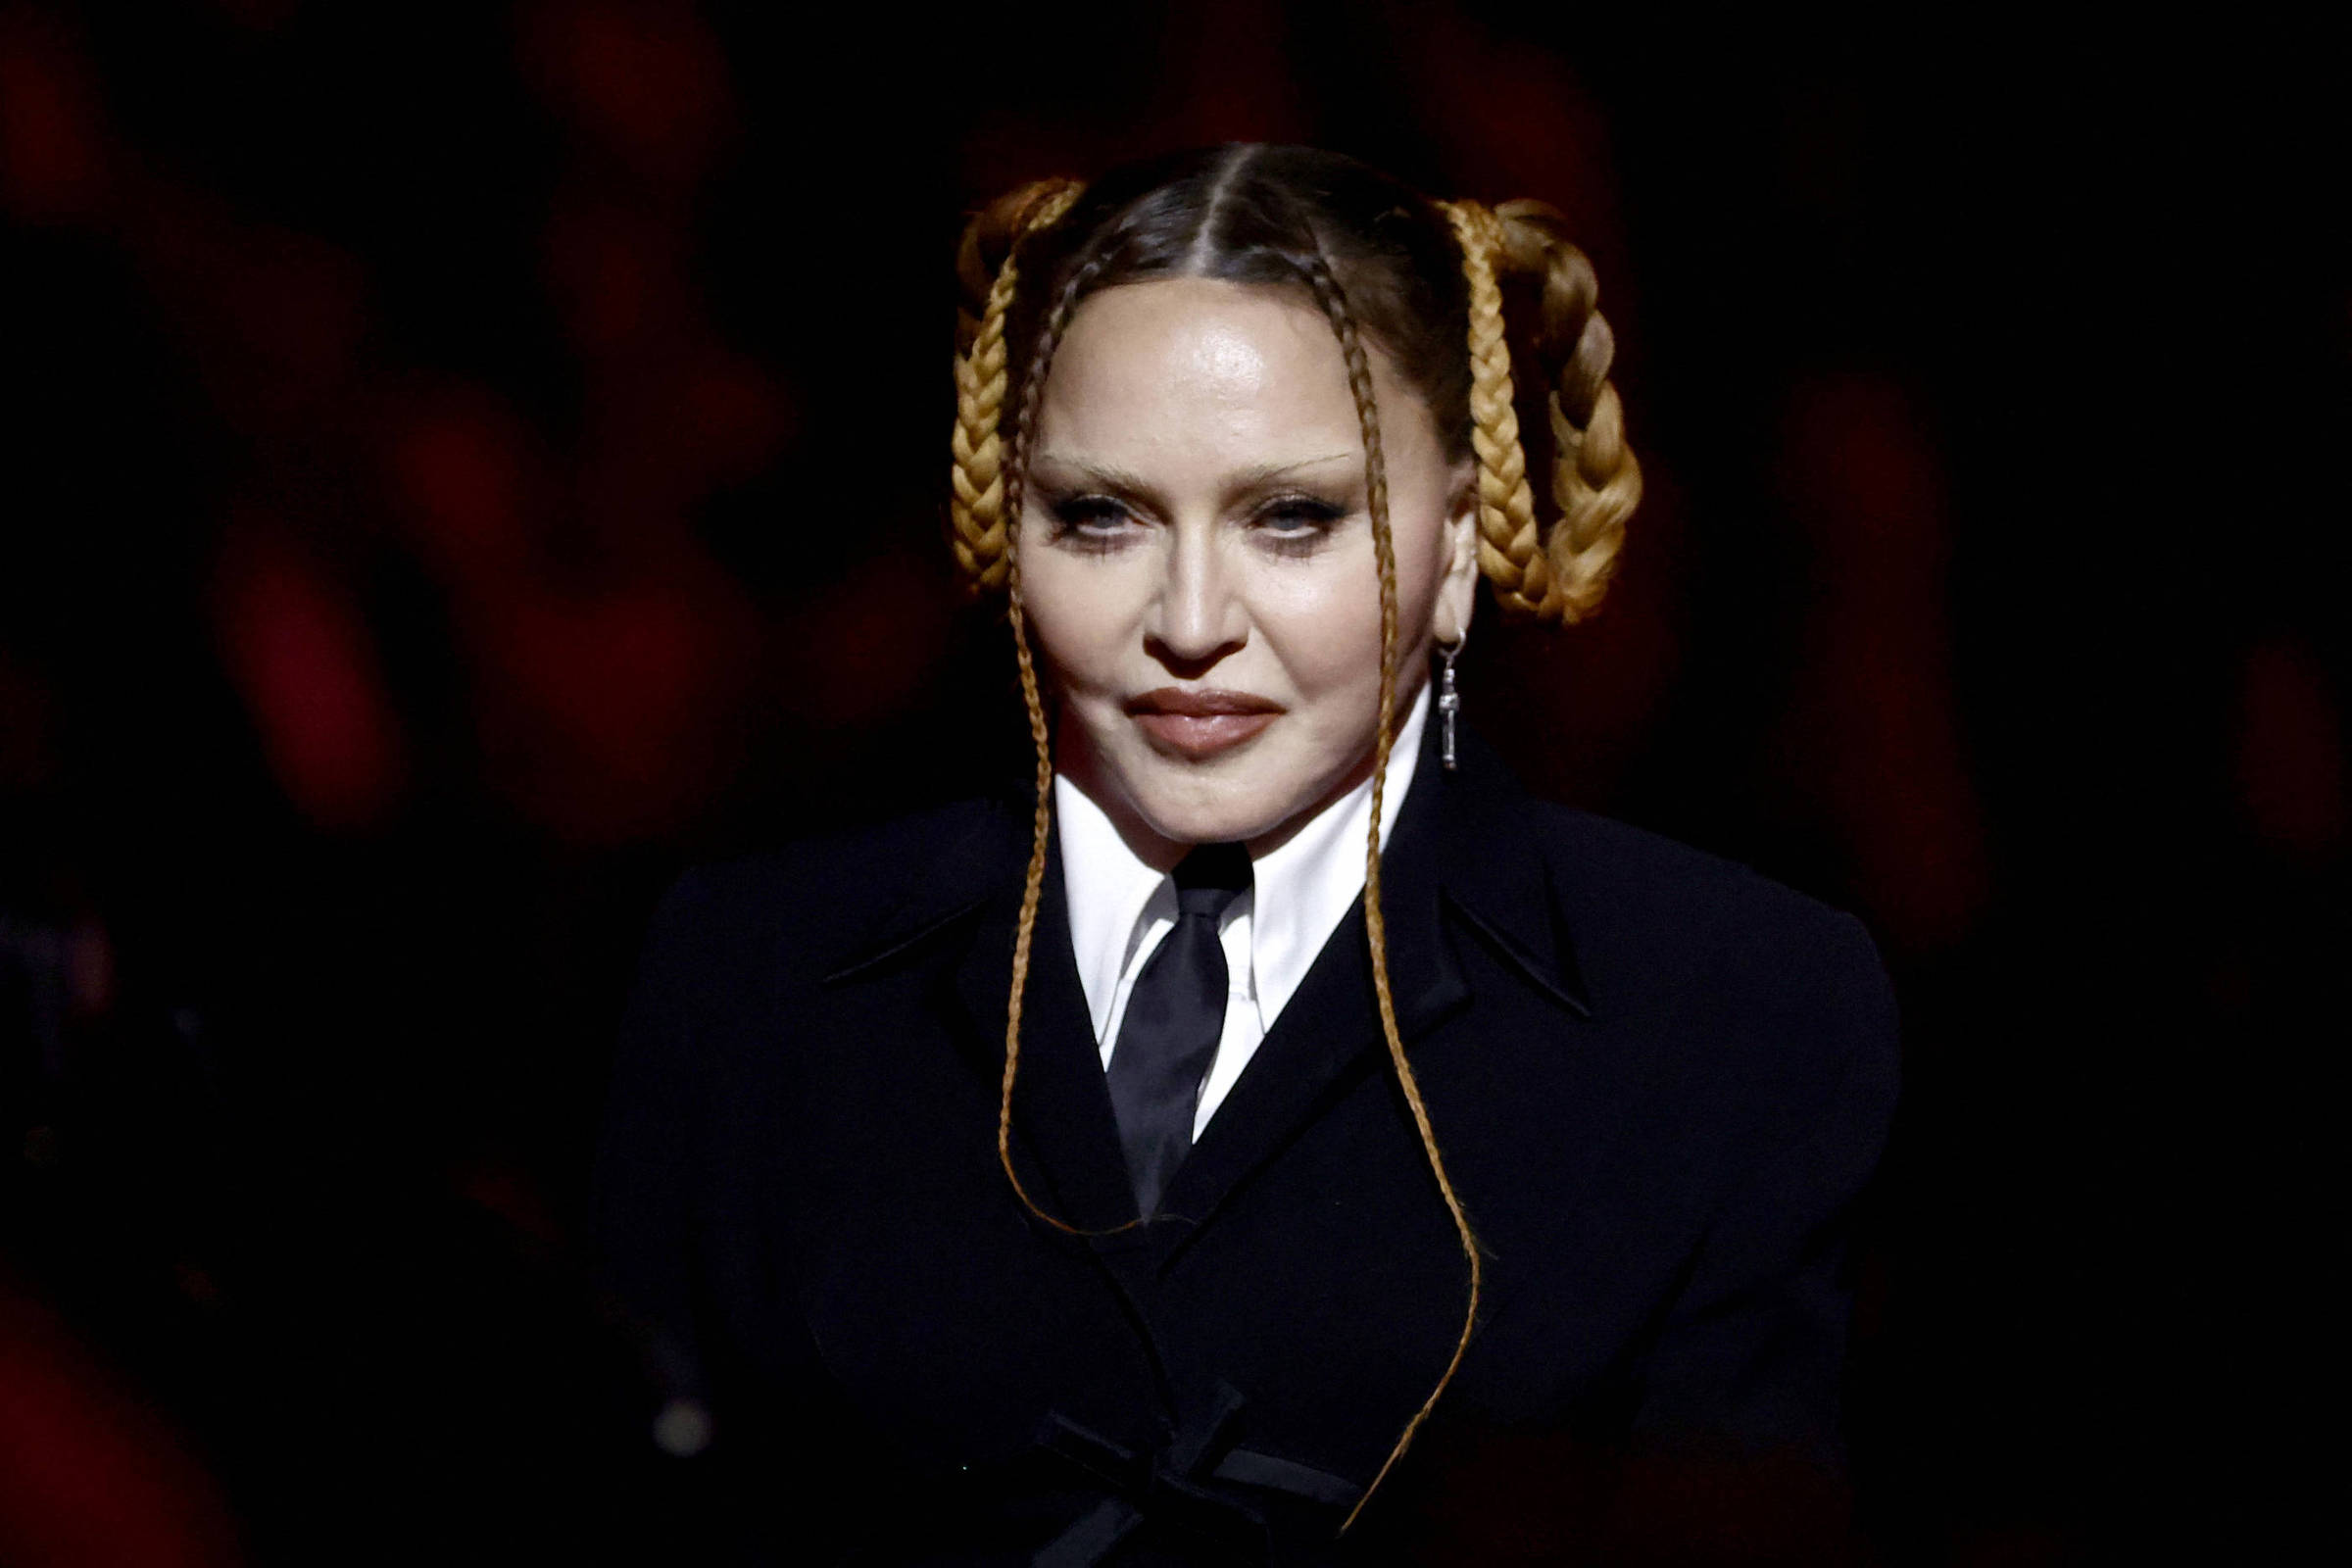 Das críticas a Madonna no Grammy às 'trintonas', velhice é vista como inimiga - UOL